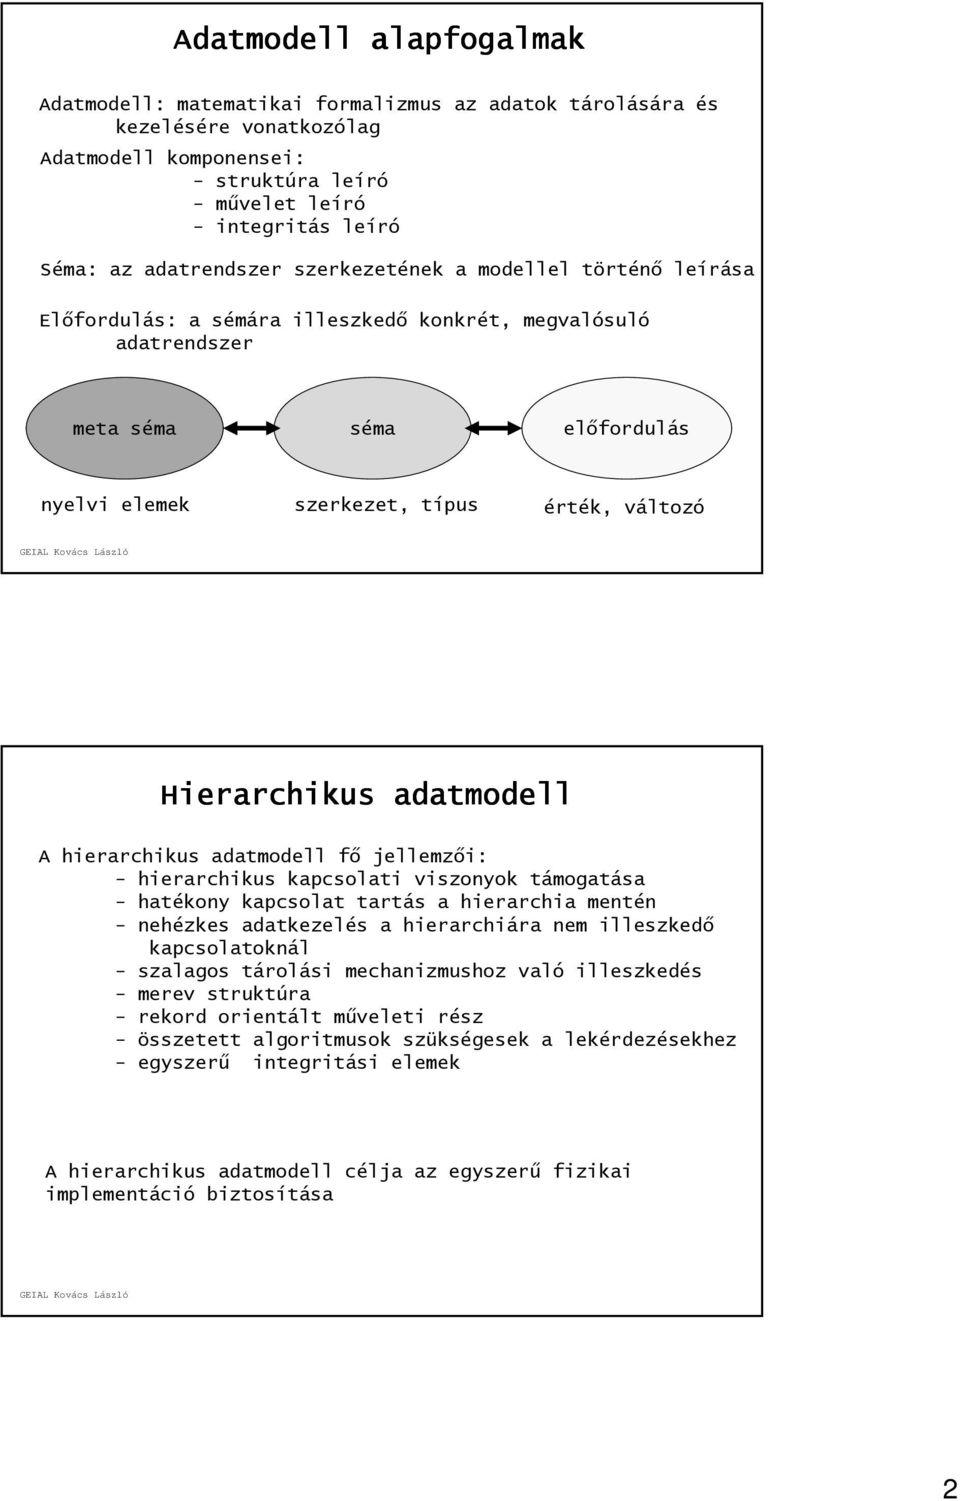 Hierarchikus adatmodell A hierarchikus adatmodell fő jellemzői: - hierarchikus kapcsolati viszonyok támogatása - hatékony kapcsolat tartás a hierarchia mentén - nehézkes adatkezelés a hierarchiára